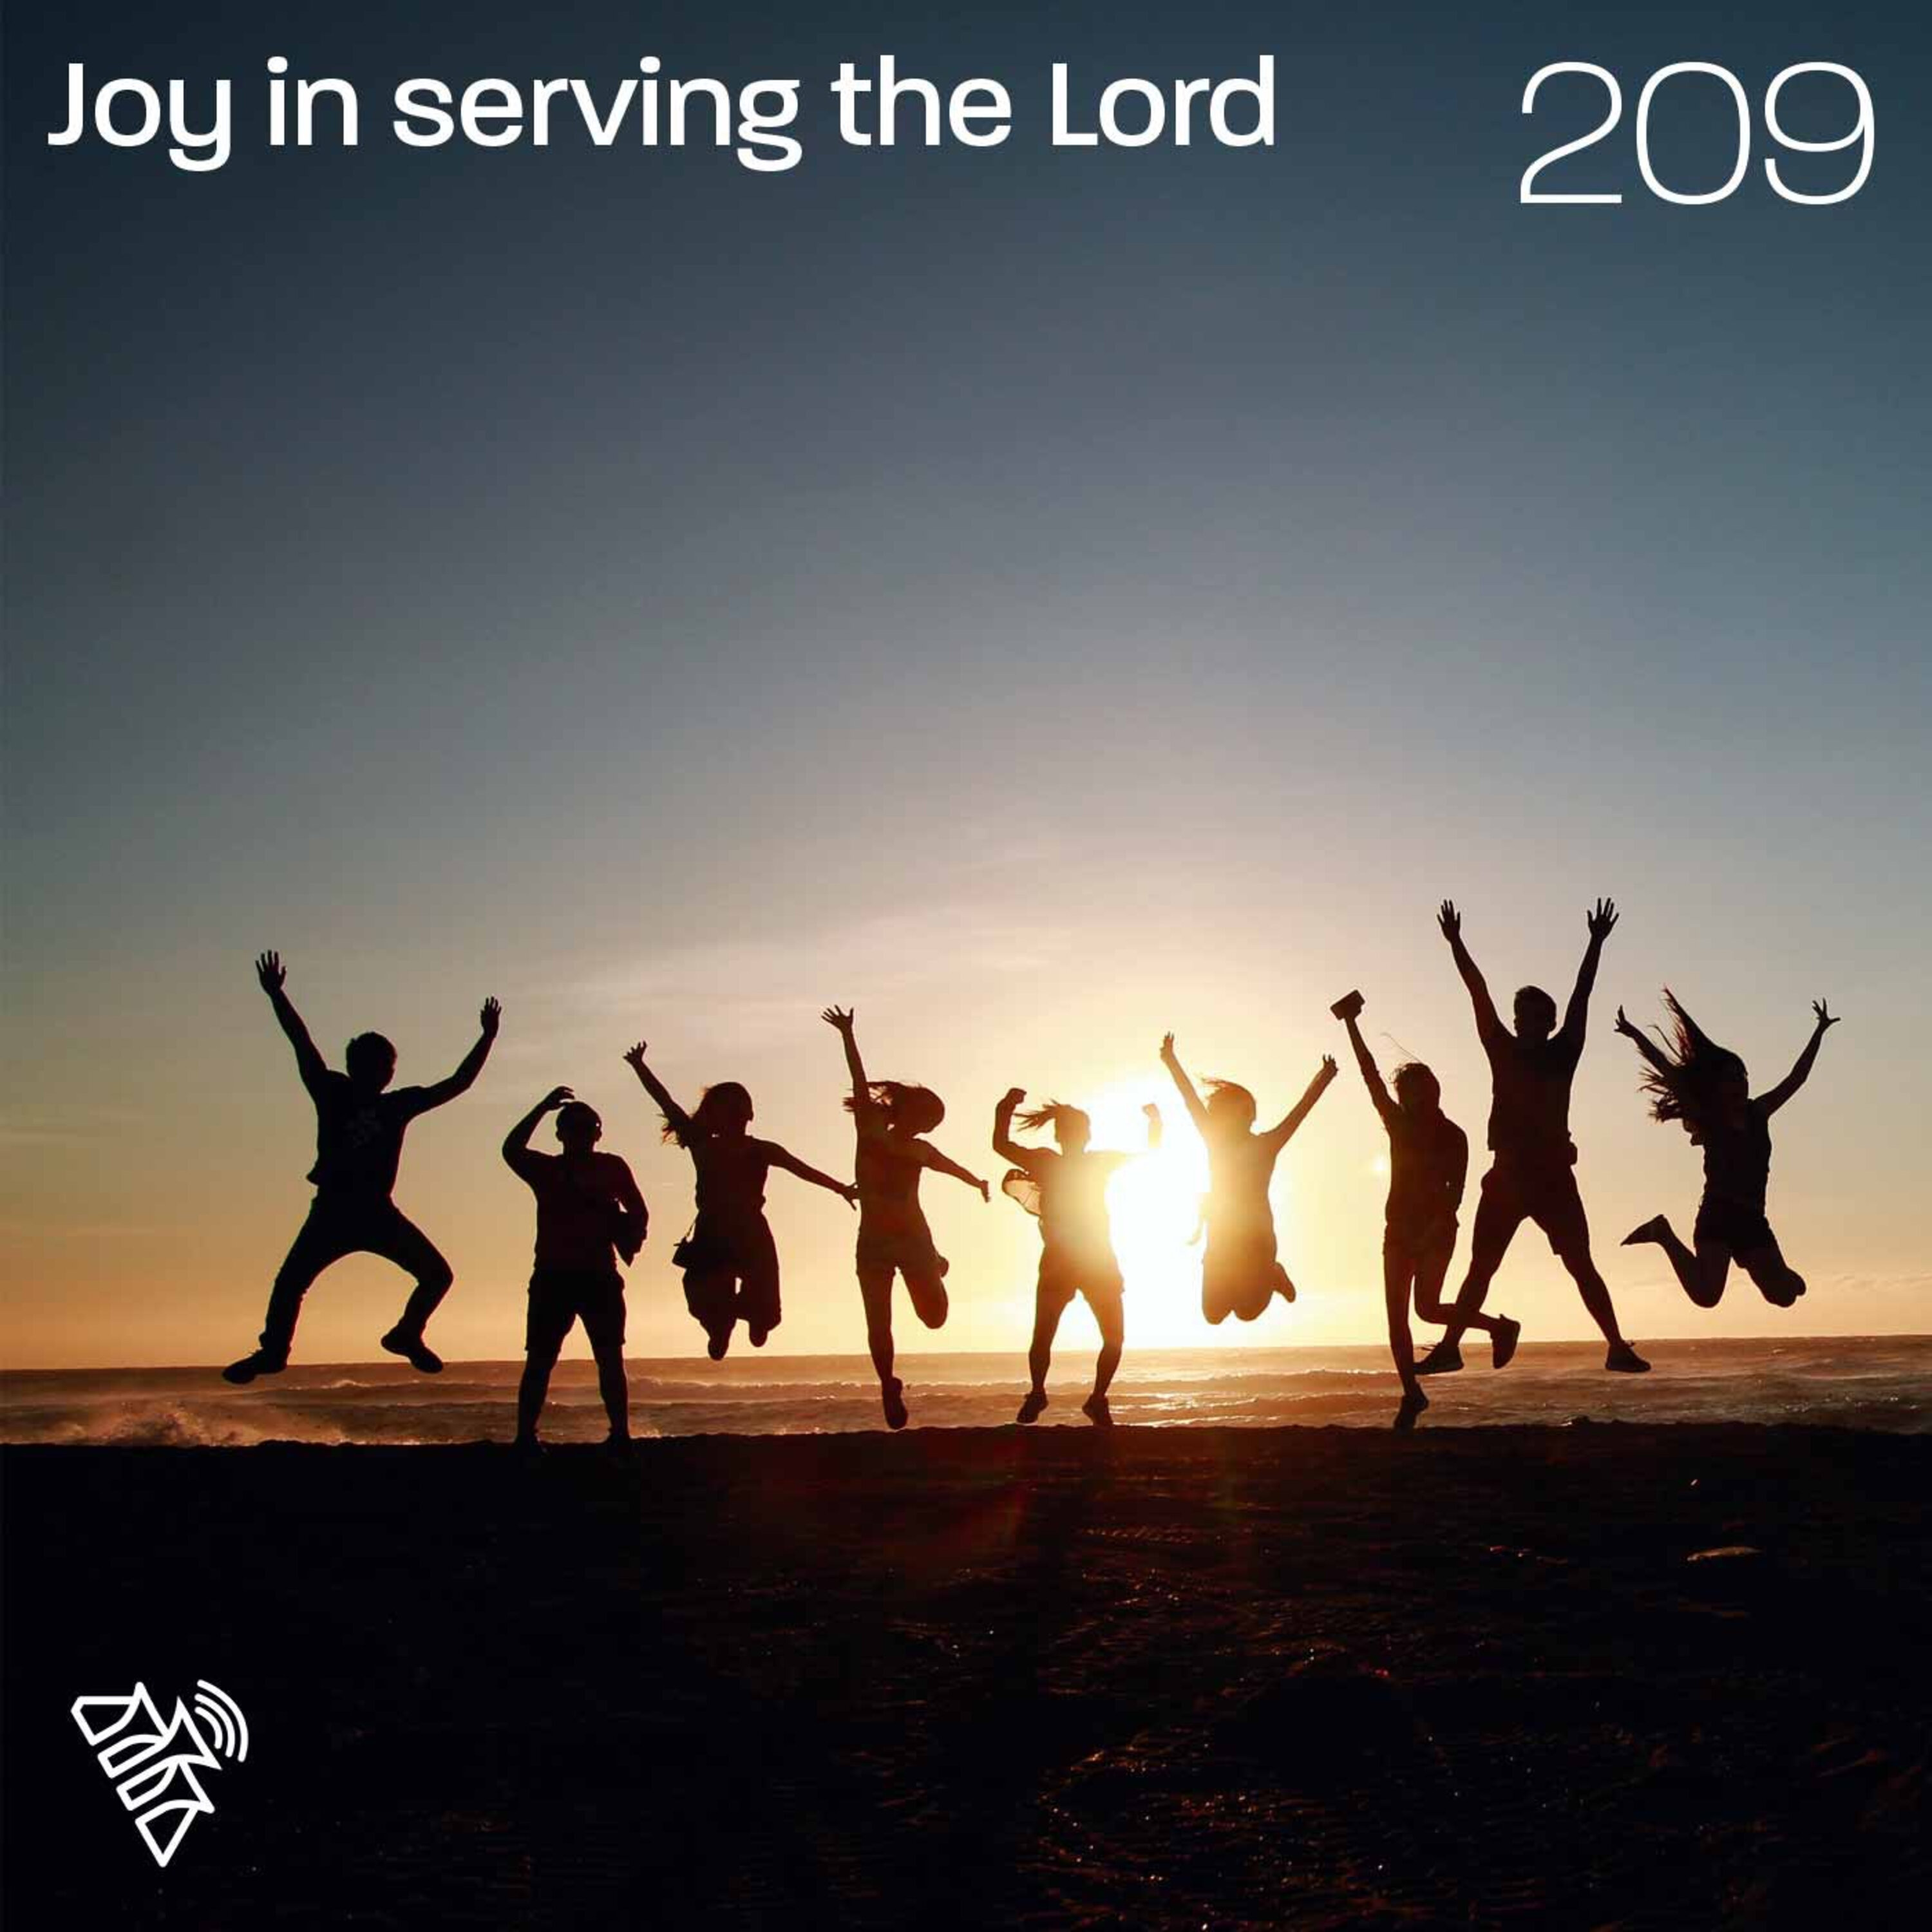 Joy in serving the Lord - John Van De Giessen - 209